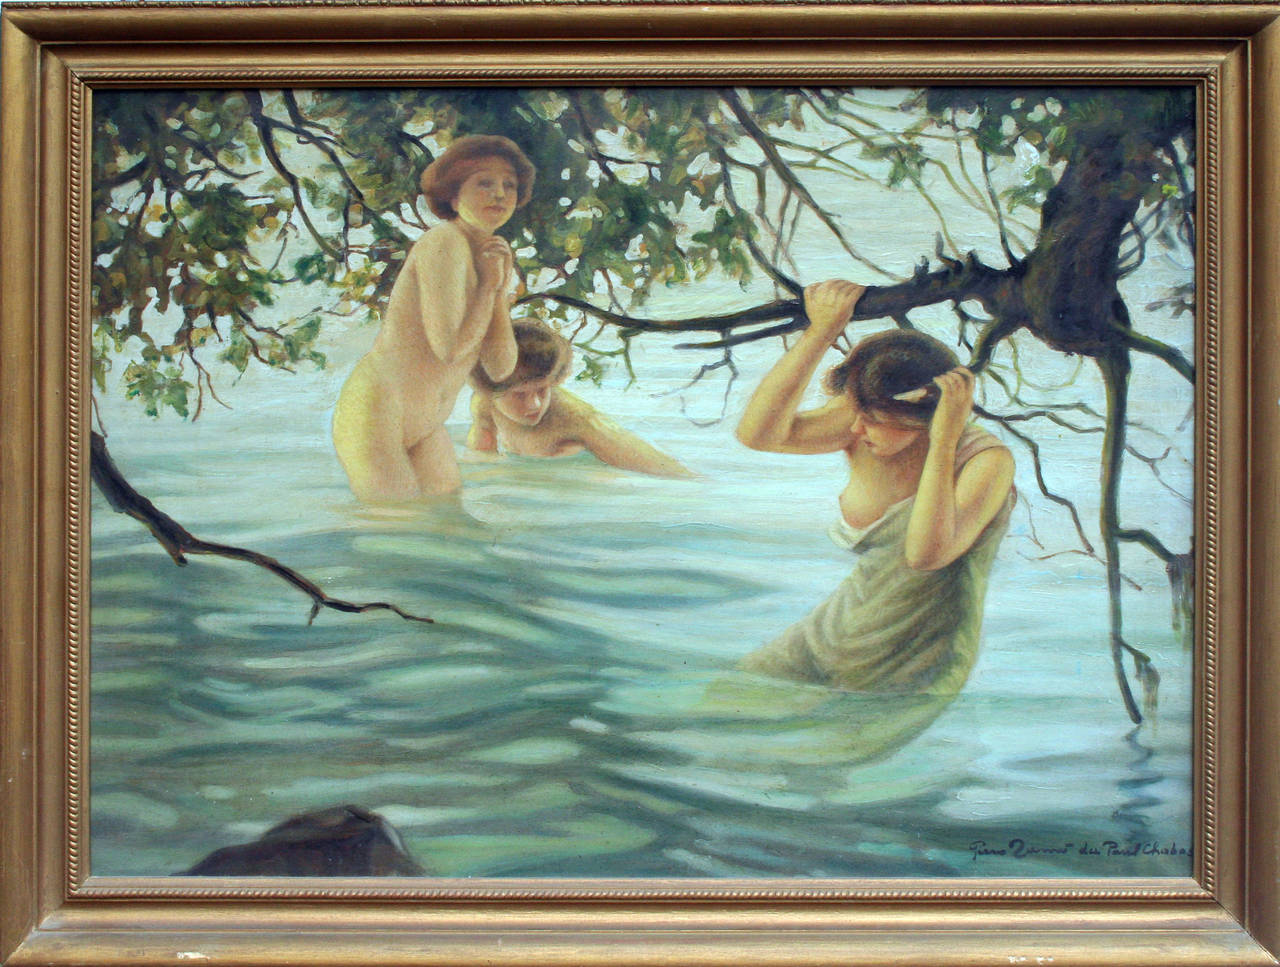 Piero Tamo Nude Painting - The Bathers, 1930